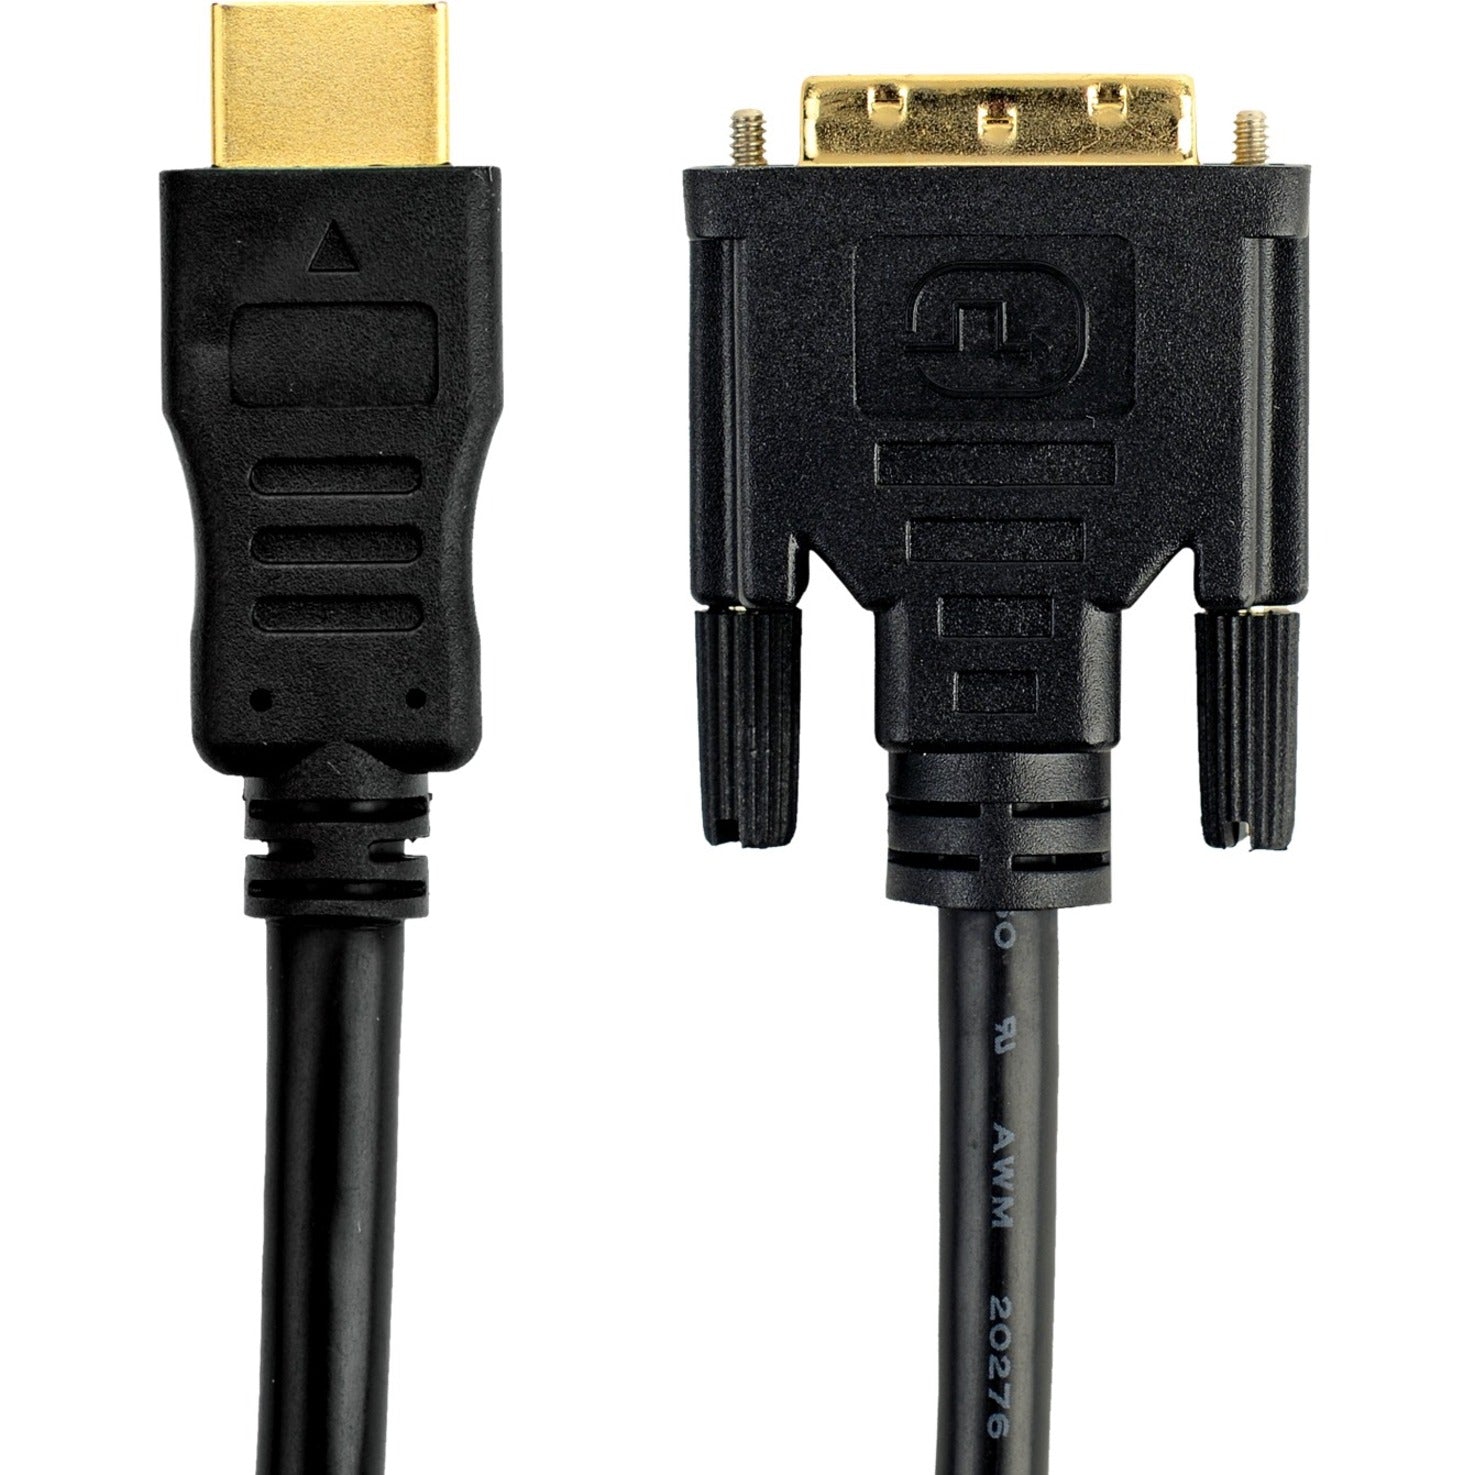 بيلكين F2E8242b03 كبل HDMI إلى DVI، 3 قدم، ضمان مدى الحياة، يحل محل سلسلة F2E8171 العلامة التجارية: Belkin ترجمة اسم العلامة التجارية: بيلكين